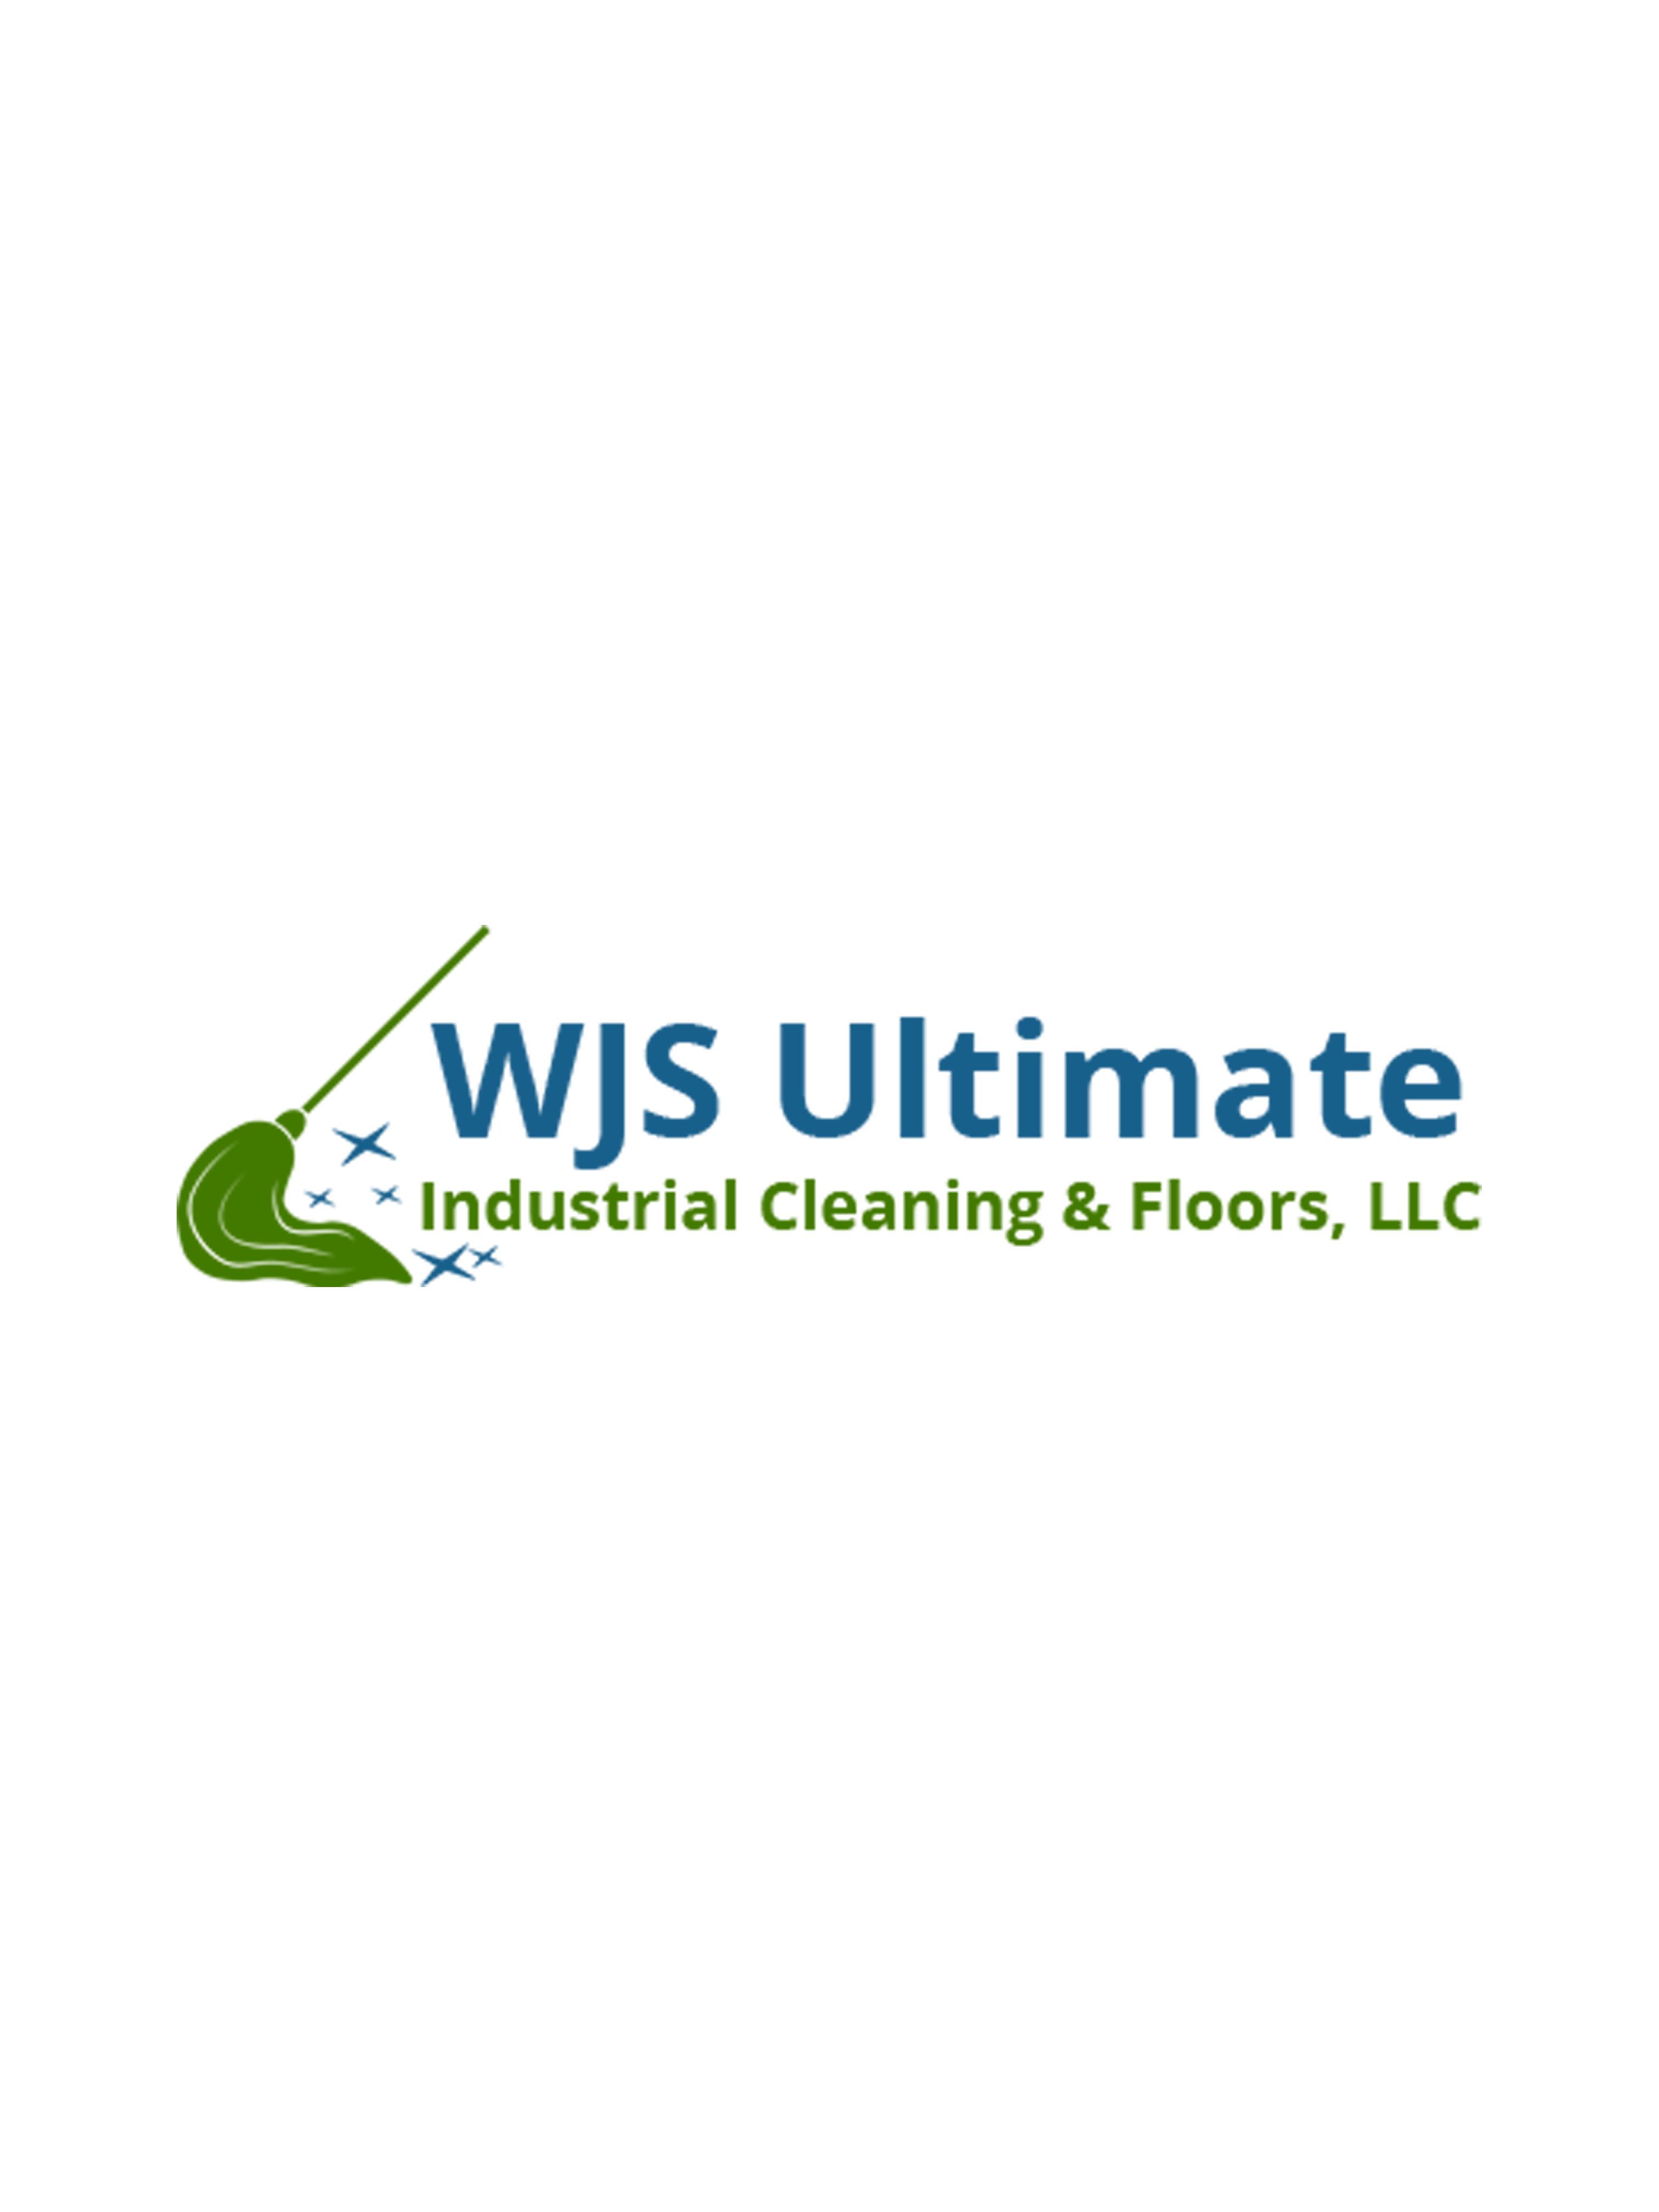 WJS Ultimate Industrial Cleaning & Floors, LLC Logo